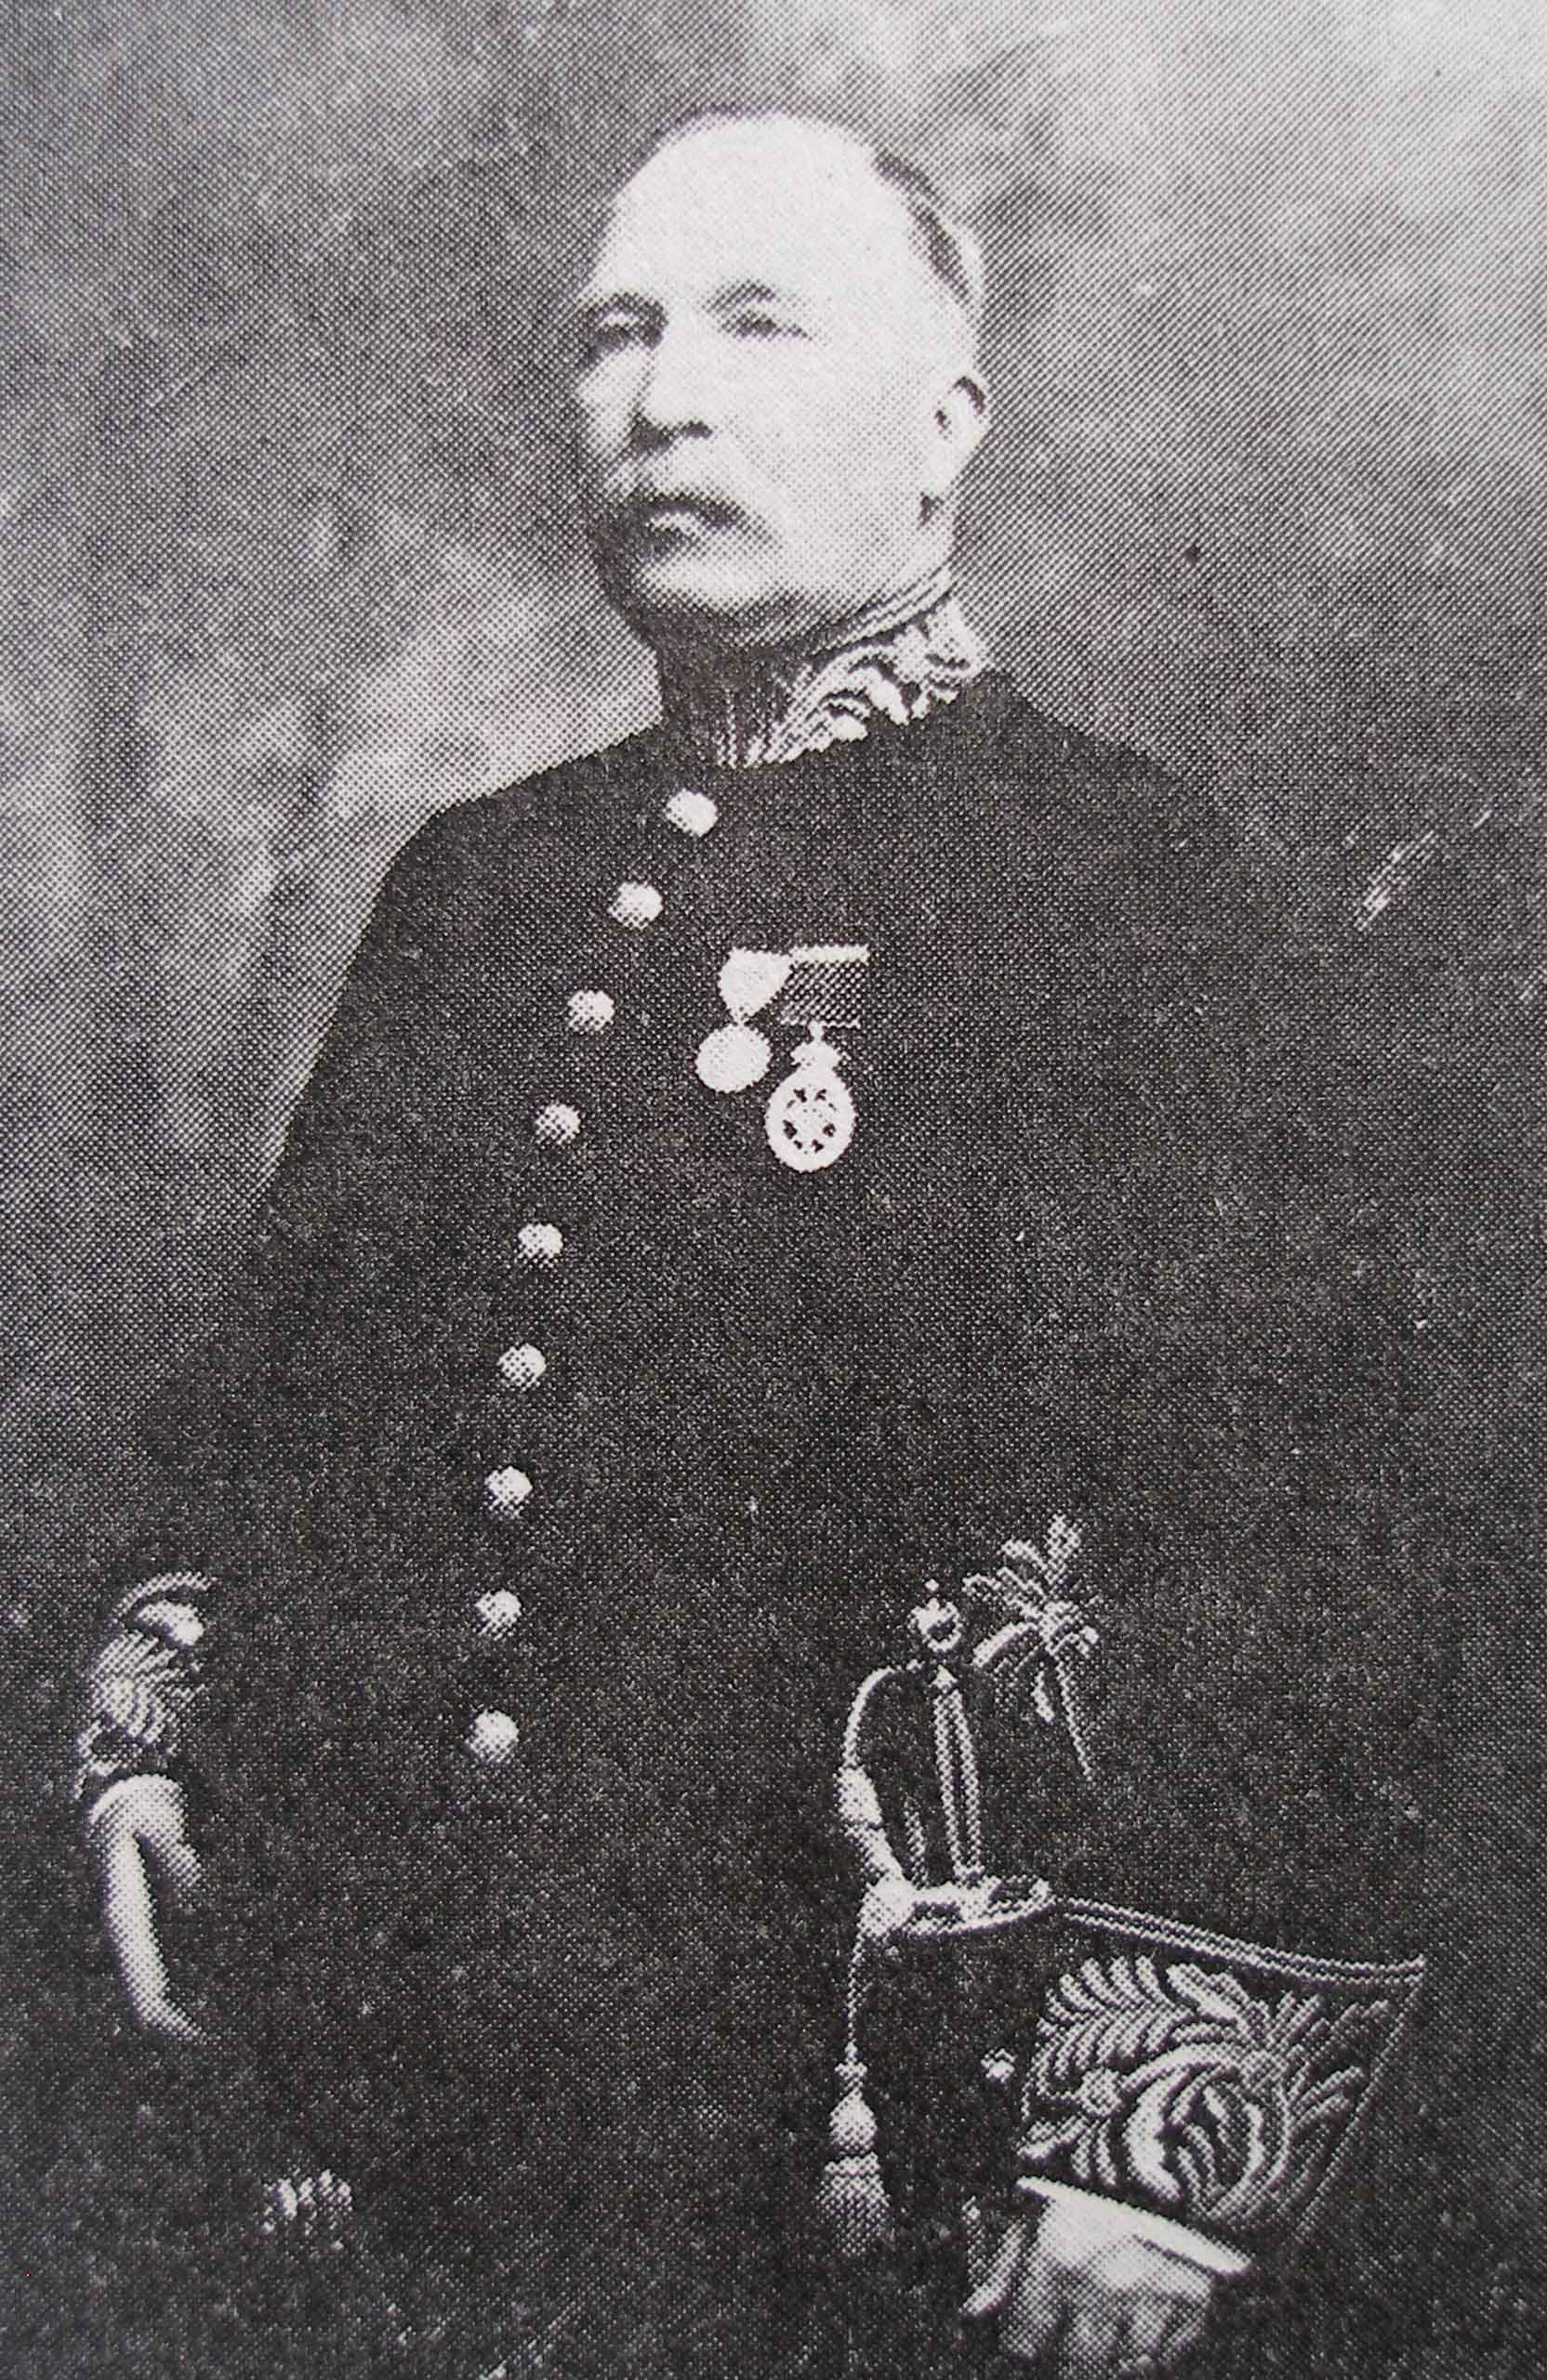 Colonel Edward gawlor Prior